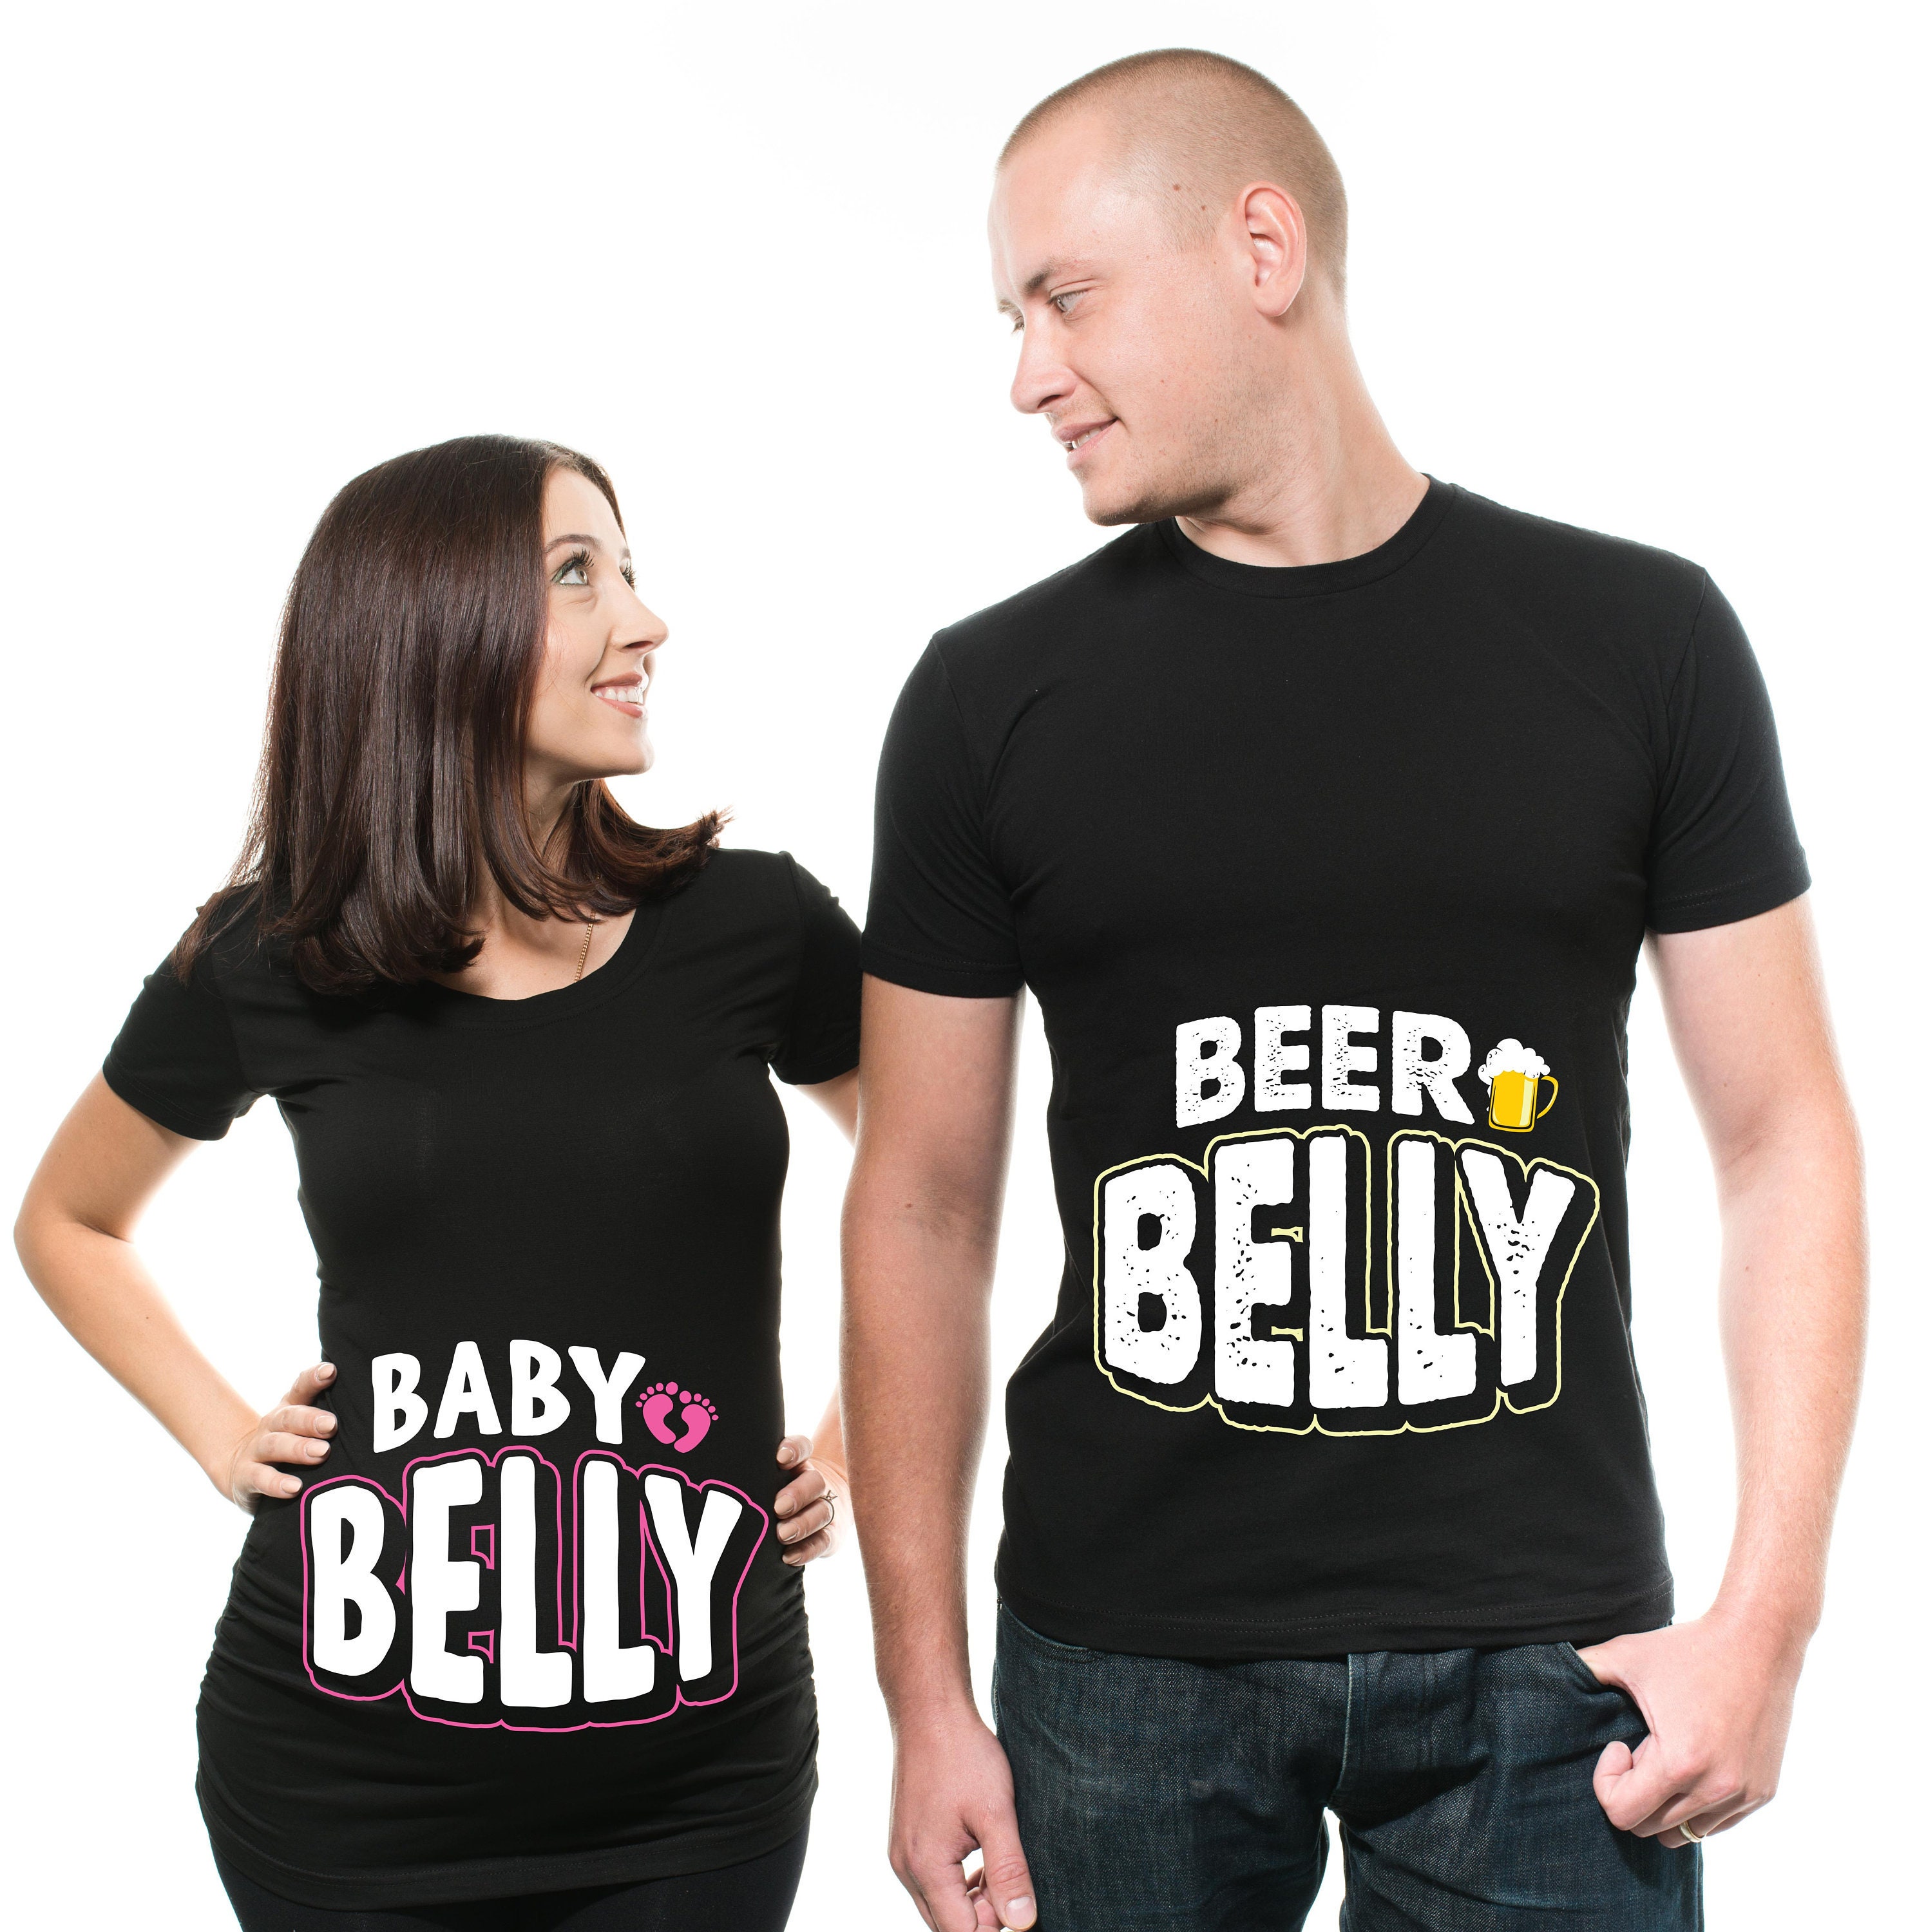 sympatisk Sag eksplicit Funny Couple Baby Belly Shirt Beer Belly Tee Shirt Pregnancy - Etsy